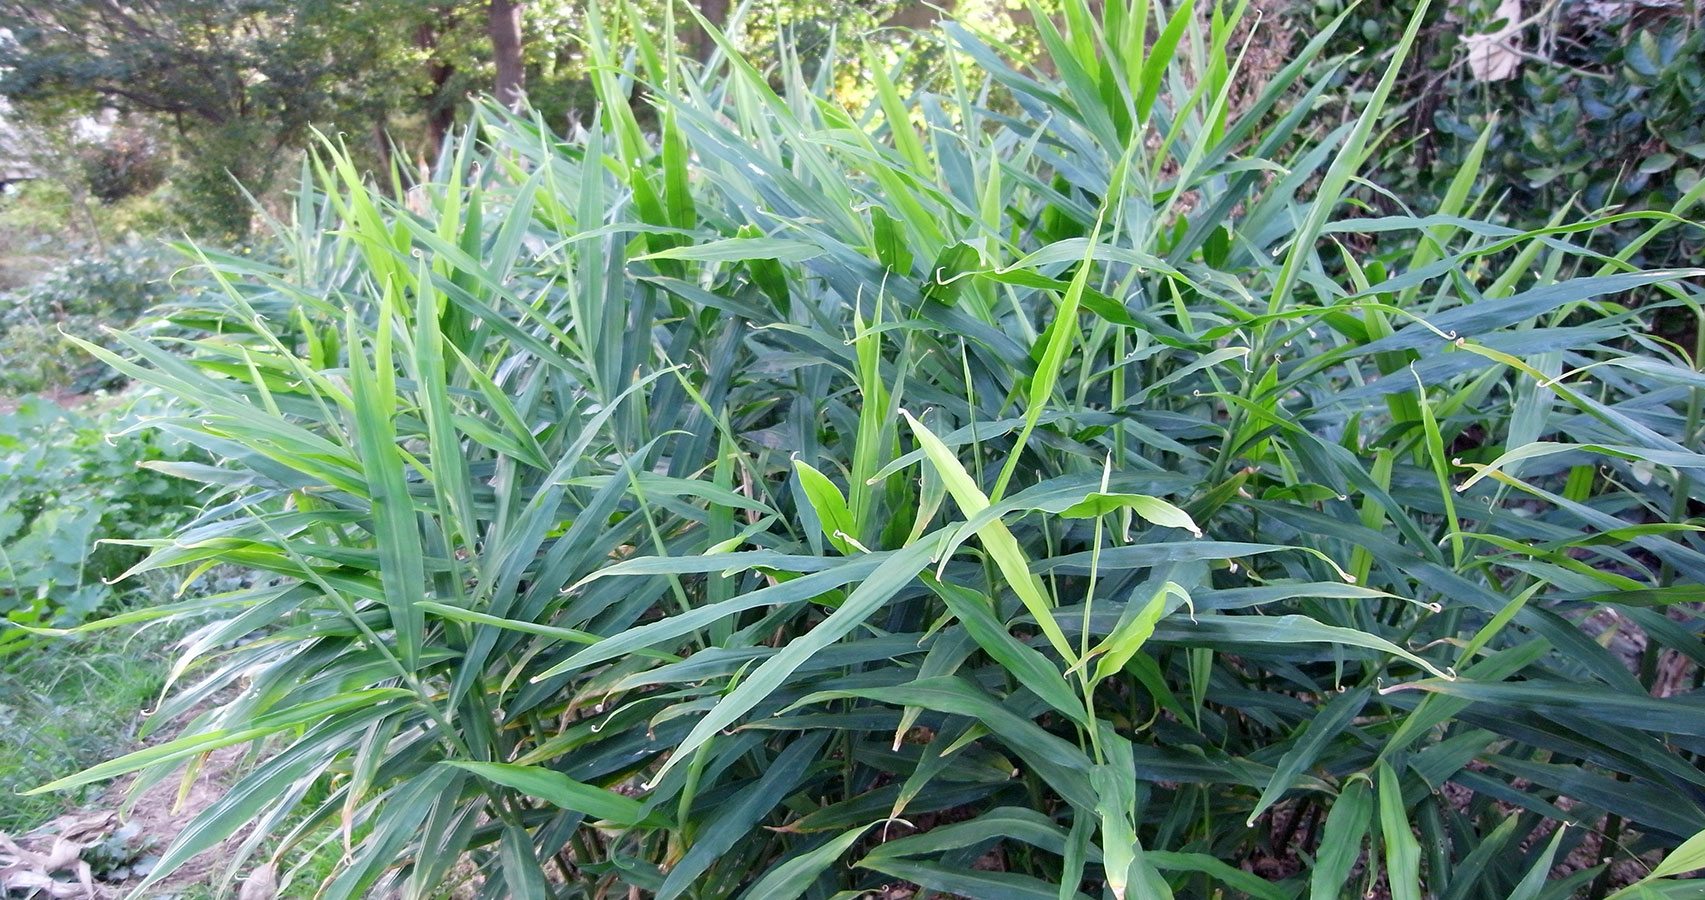  ginger plant